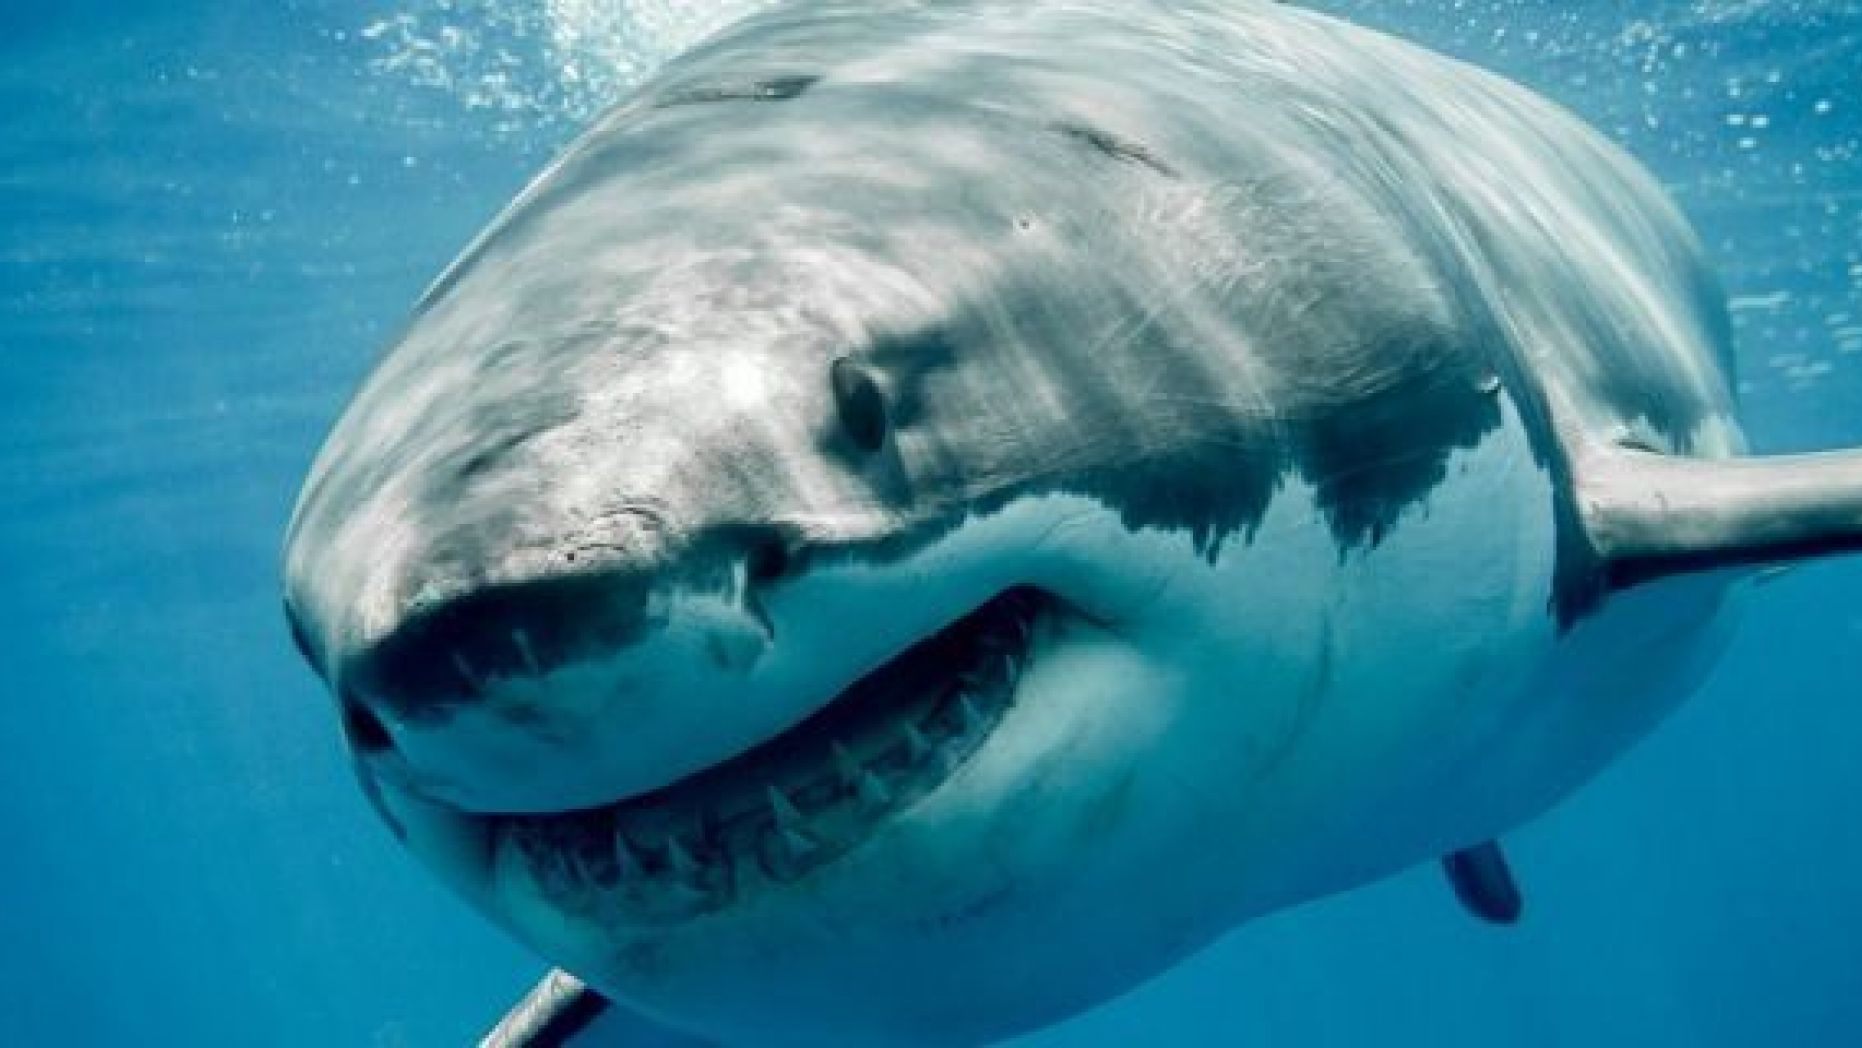 Λευκός καρχαρίας επιτέθηκε σε σέρφερ -Έκοψε ένα κομμάτι από το πόδι του άνδρα (βίντεο)